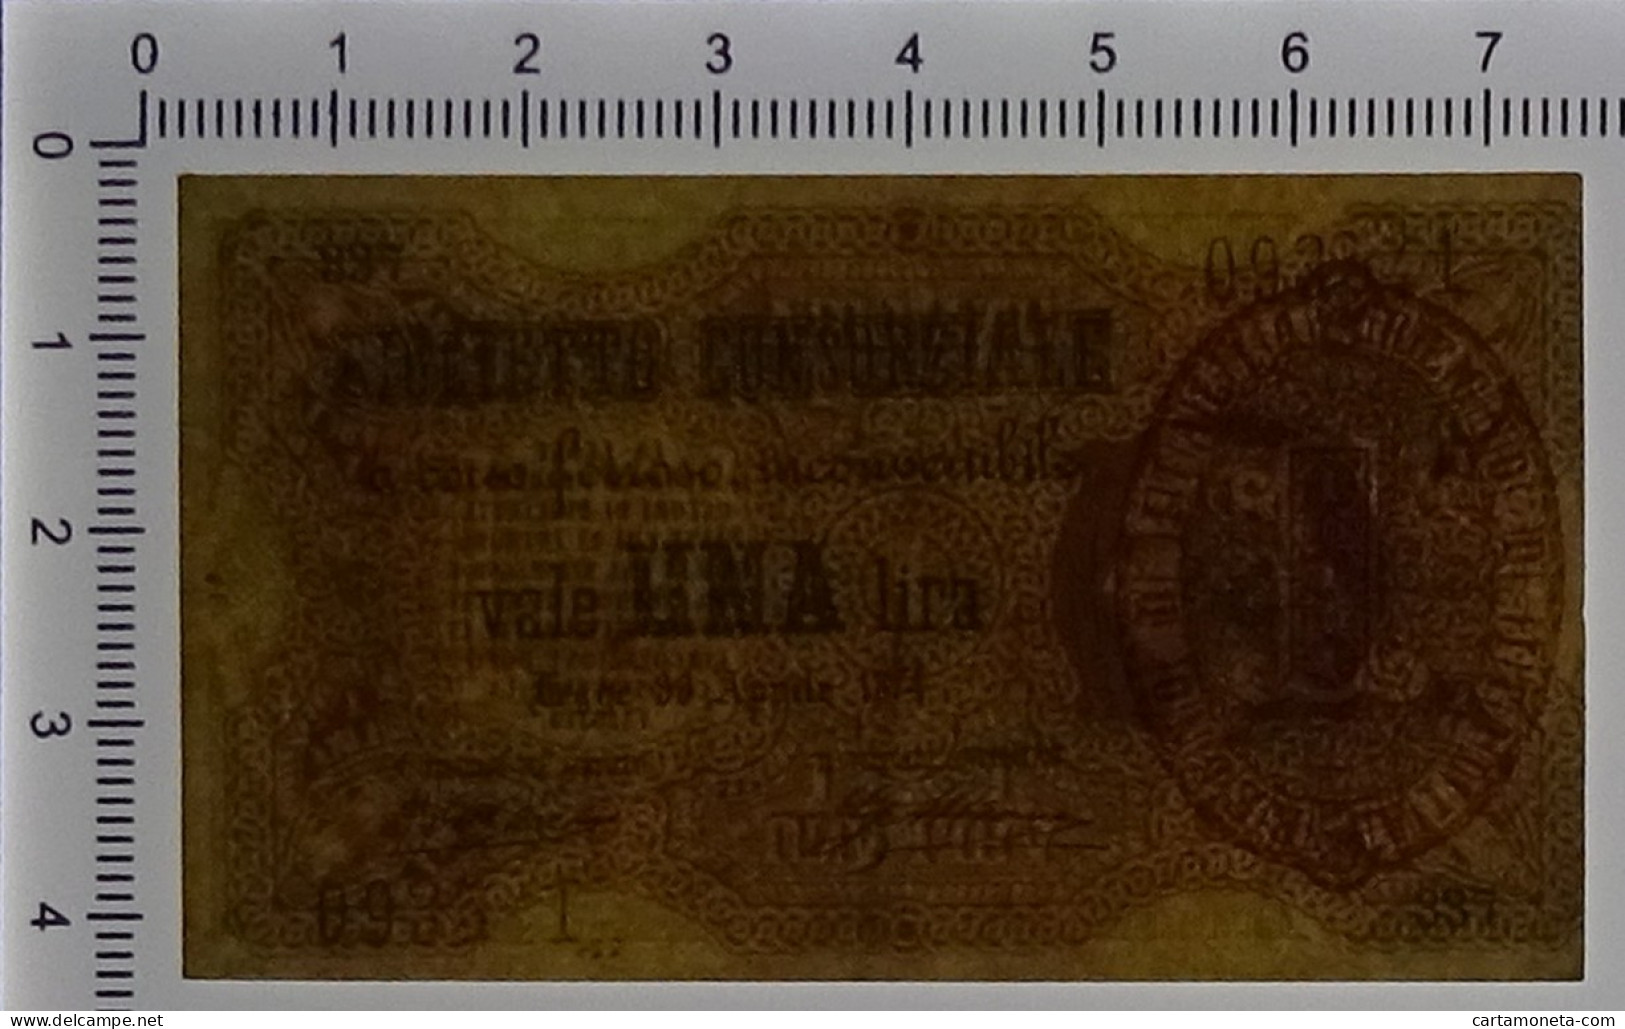 1 LIRA BIGLIETTO CONSORZIALE REGNO D'ITALIA 30/04/1874 BB/SPL - Biglietto Consorziale